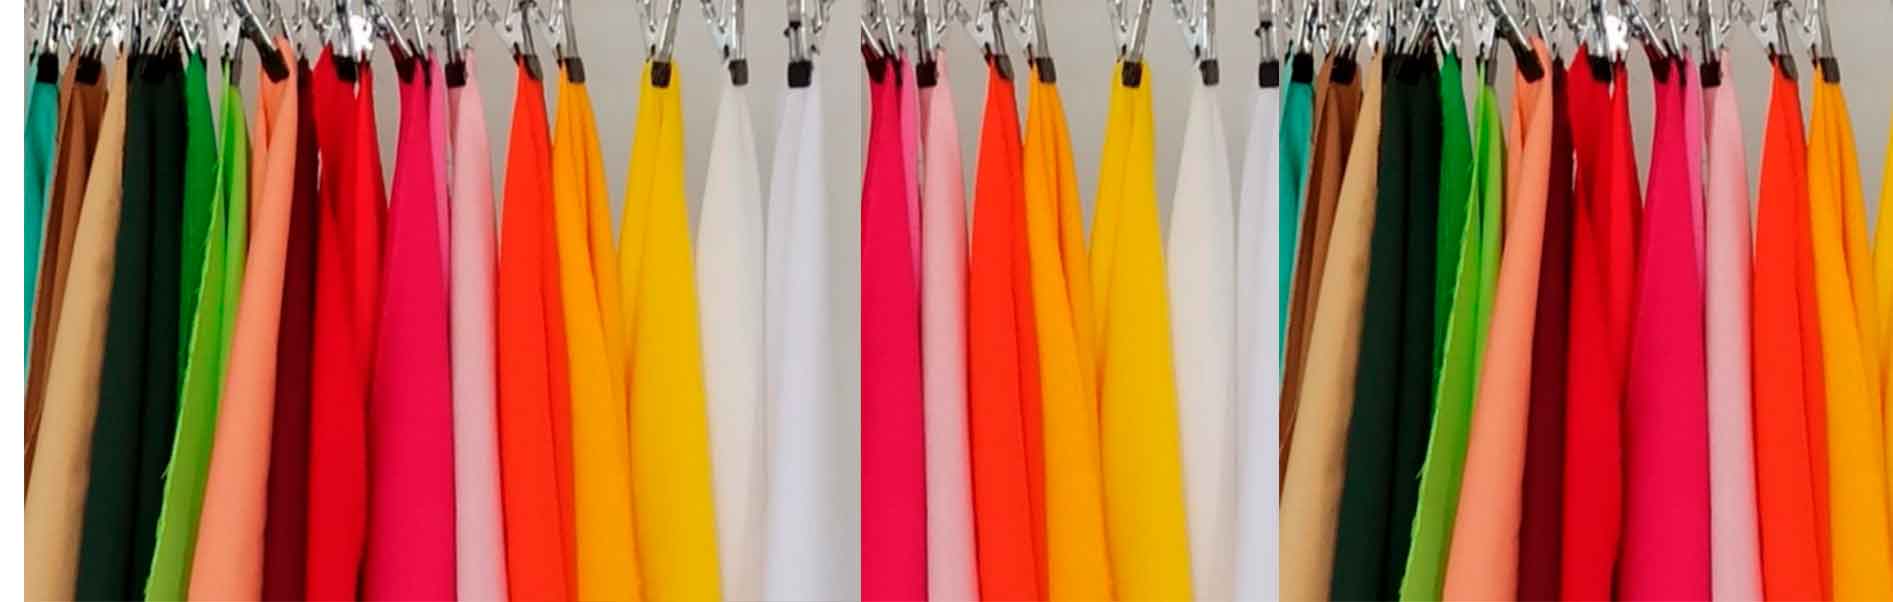 Cómo elegir el color en la ropa para que te siente bien. Colorimetría